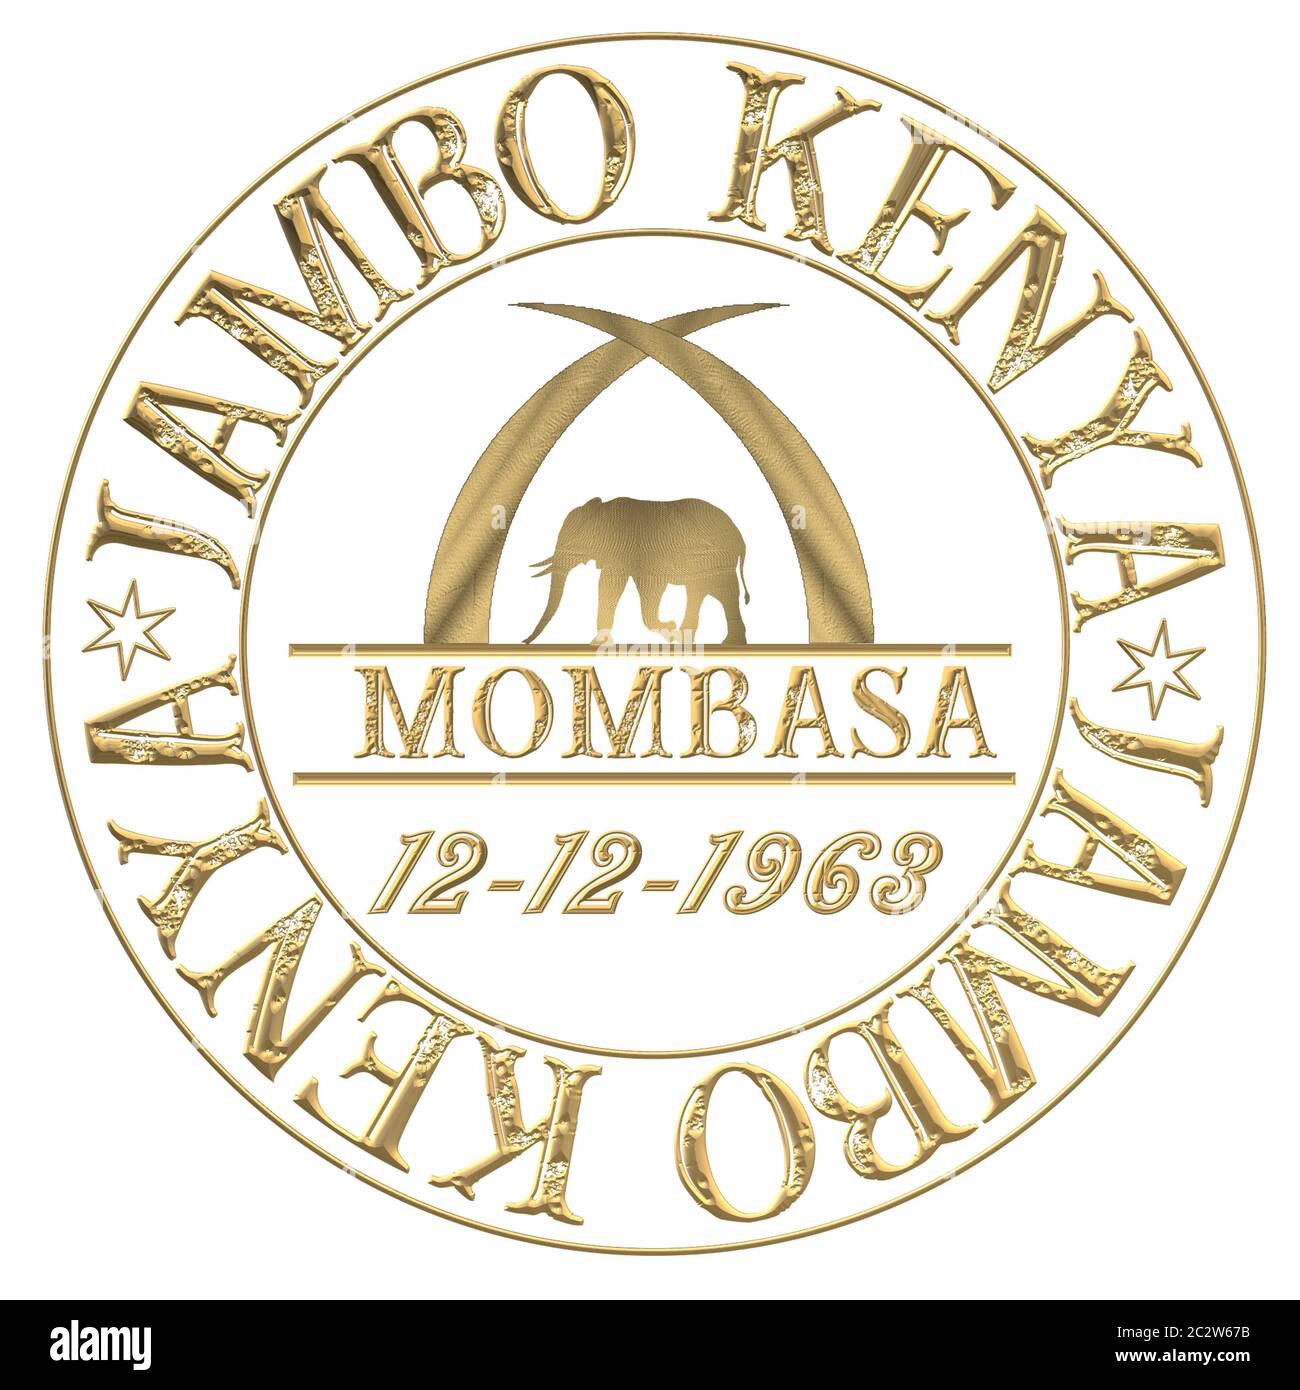 Briefmarke mit Aufschrift Hello Kenya Jambo Kenya und Karibu Kenya Stockfoto